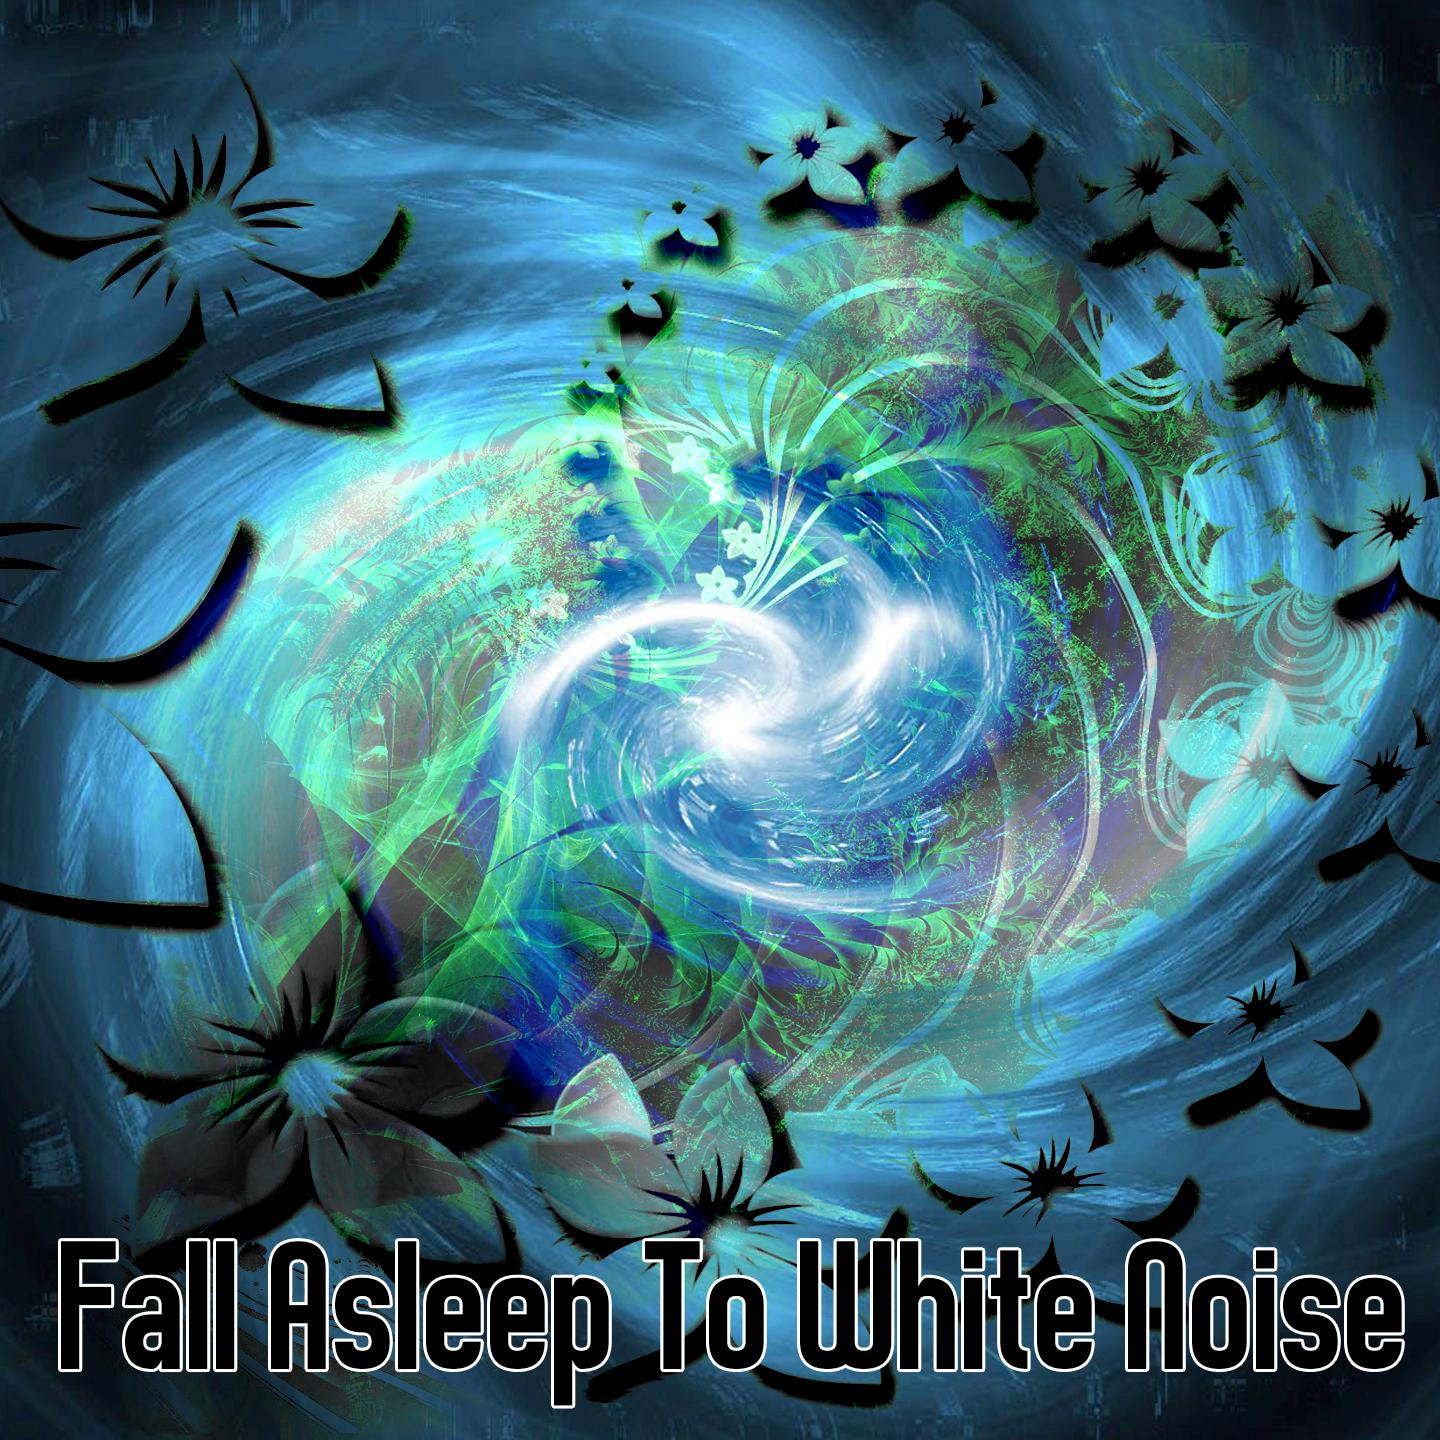 Fall Asleep To White Noise